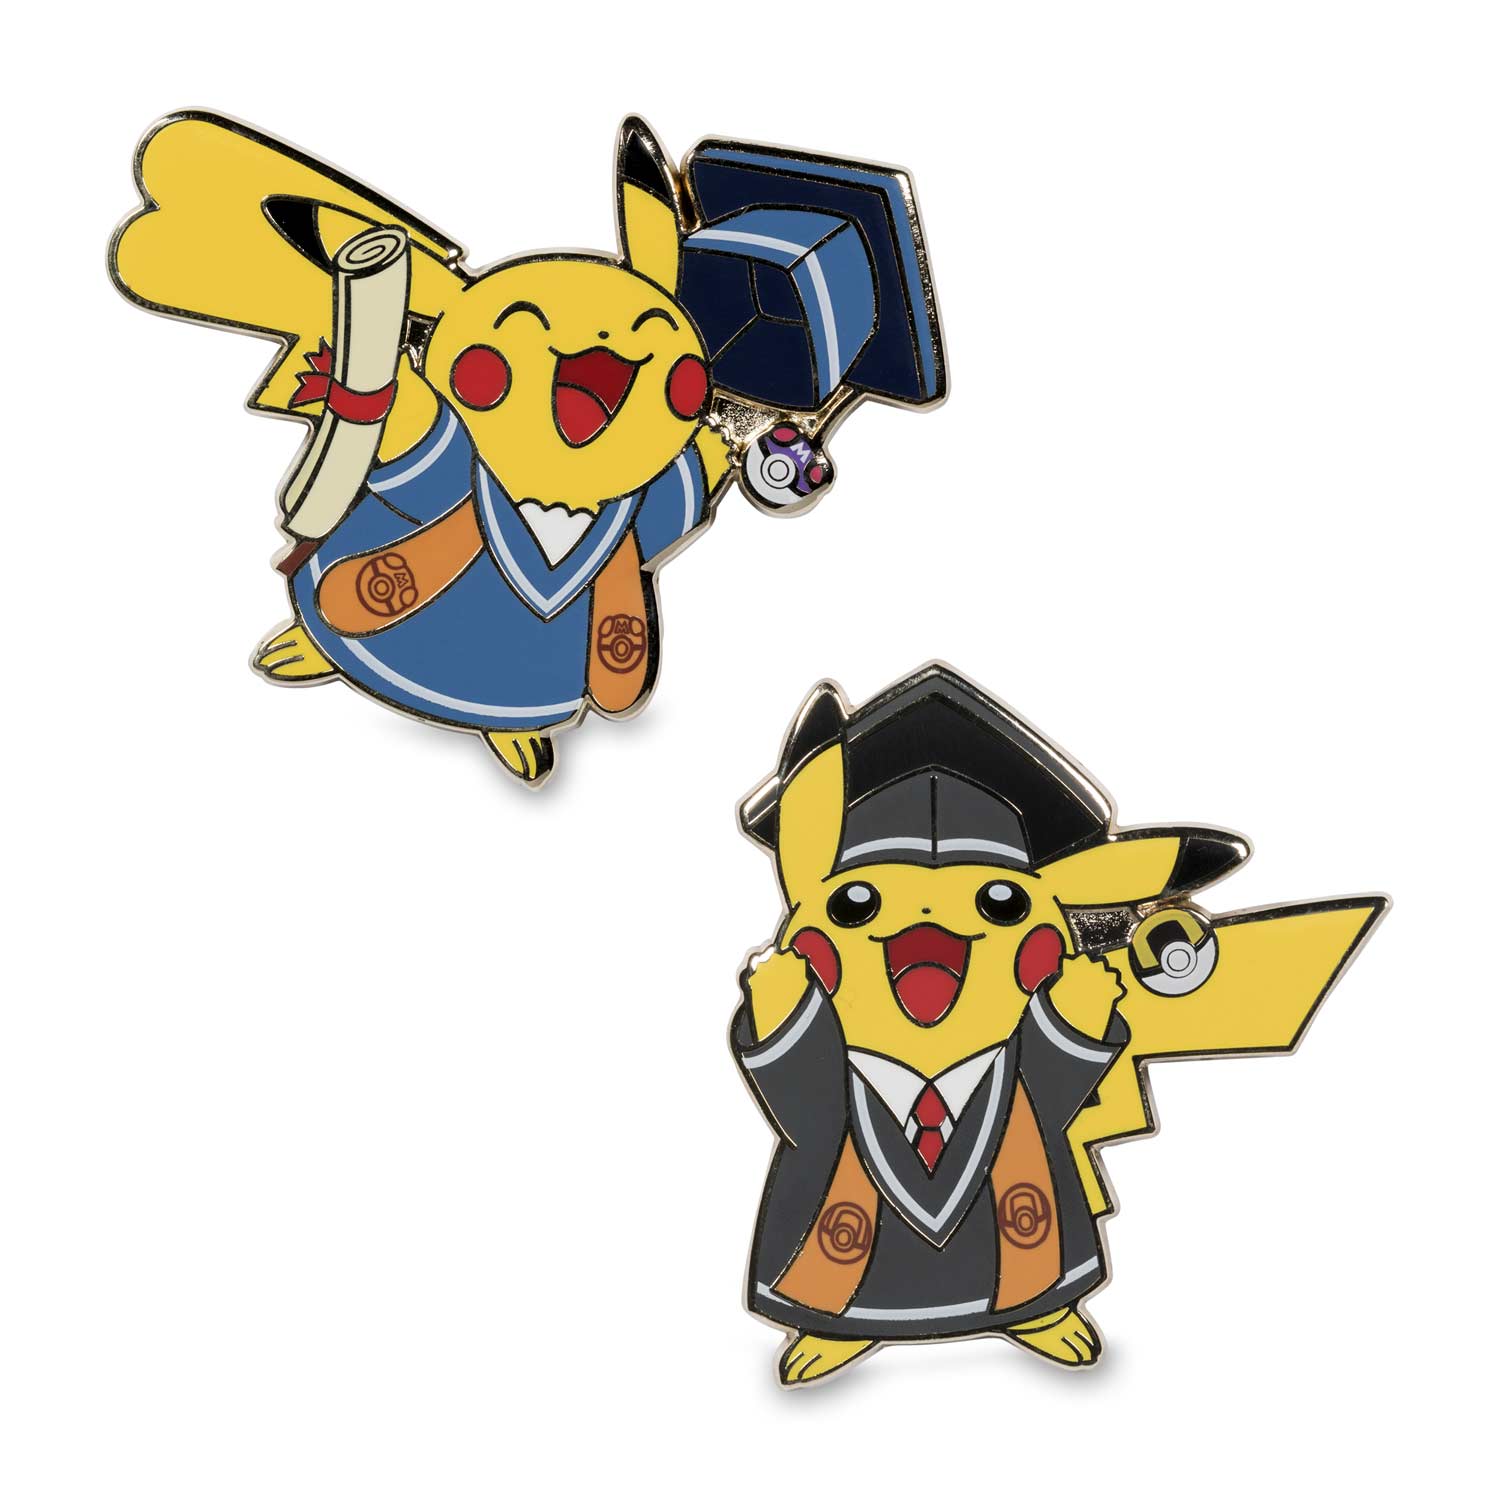 Graduation Pikachu Pokémon Pins 2 Pack Card